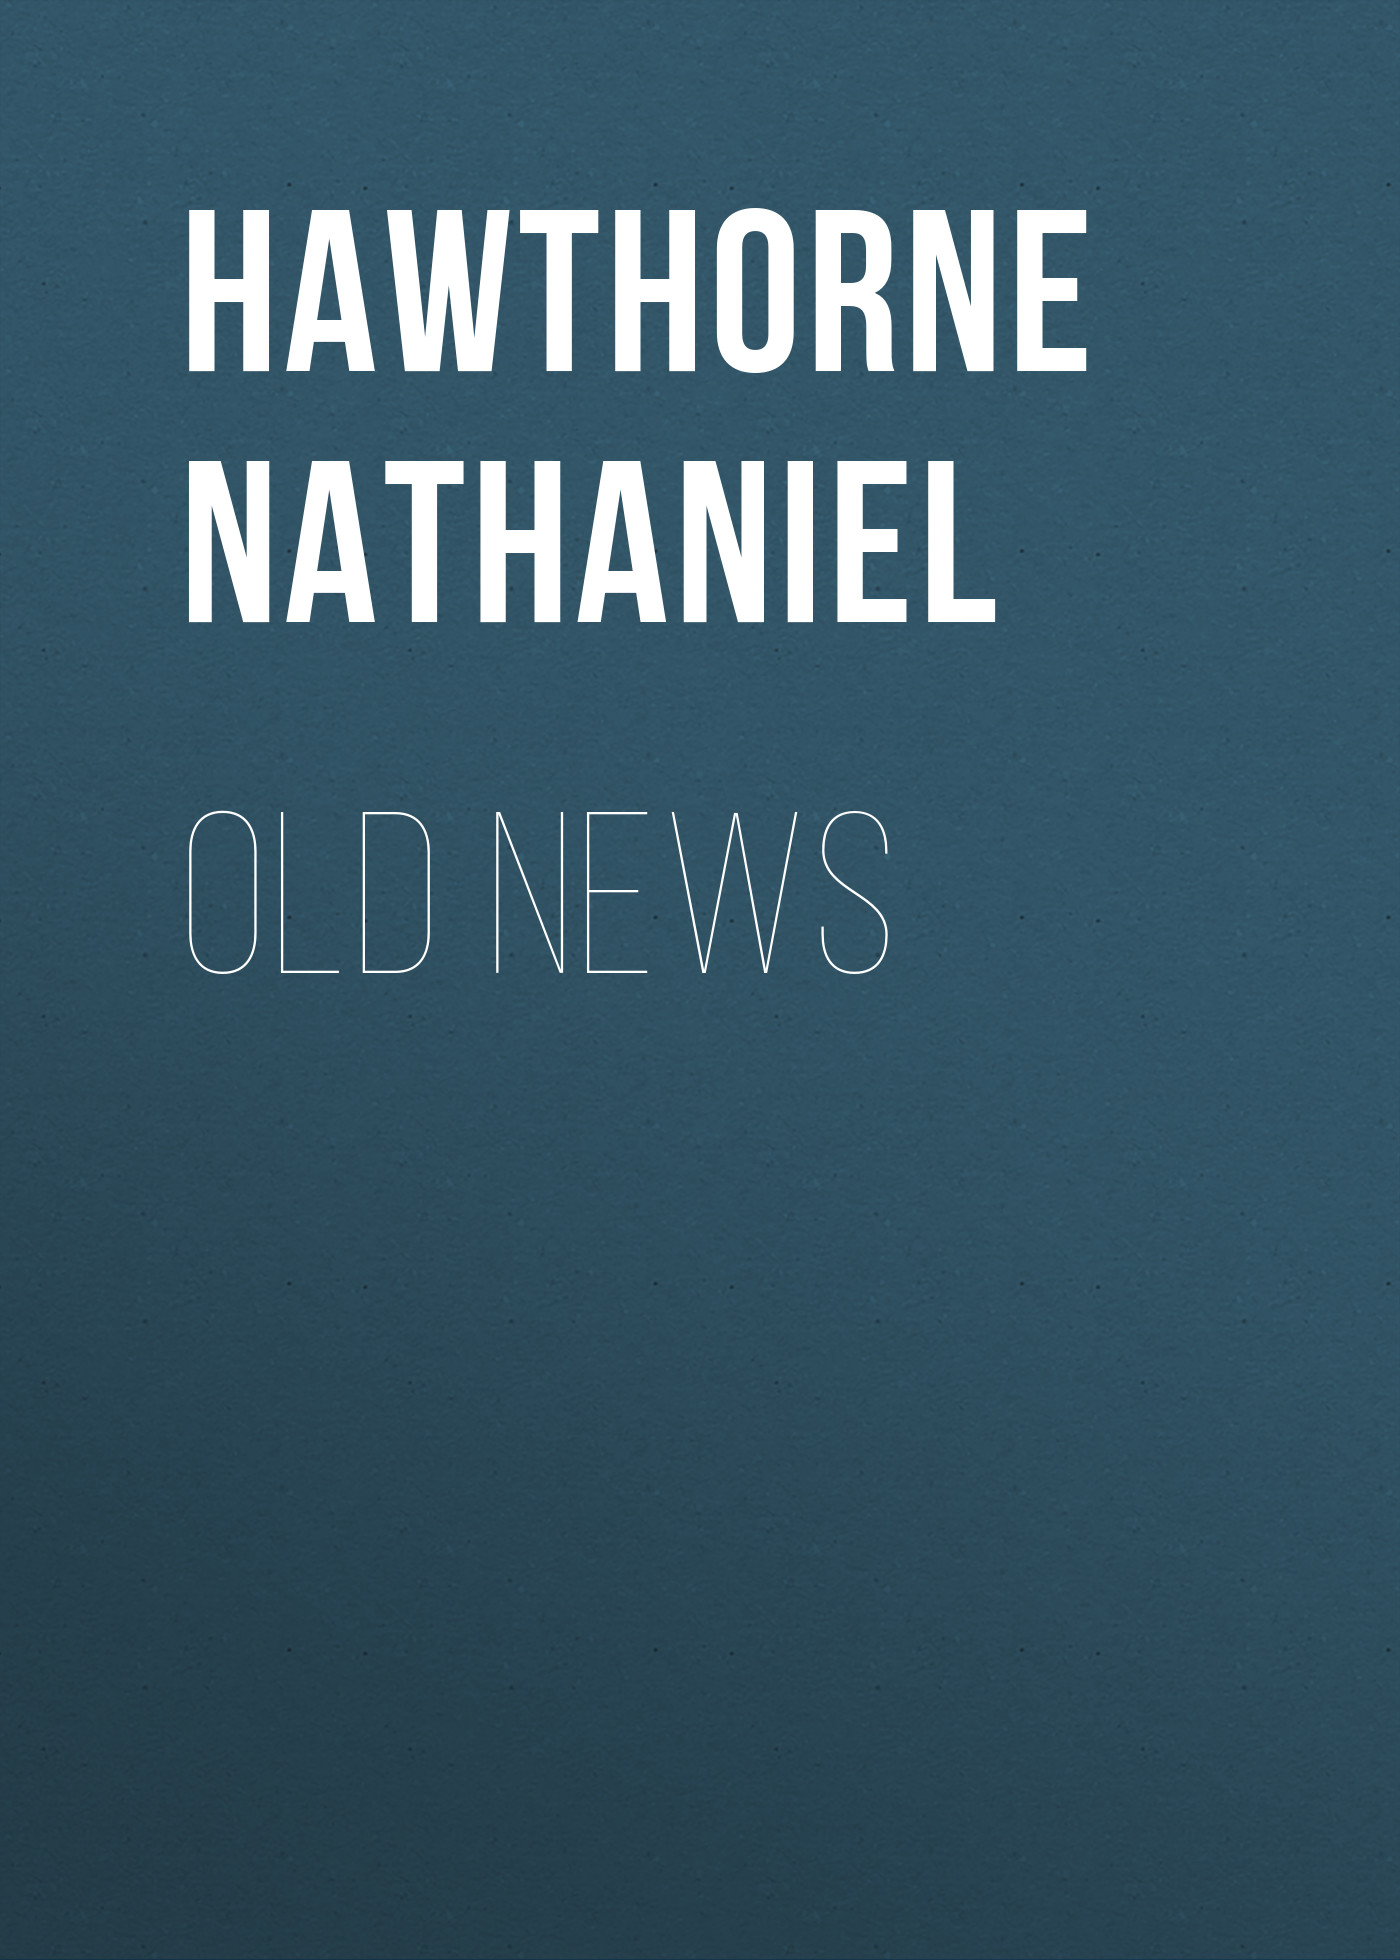 Книга Old News из серии , созданная Nathaniel Hawthorne, может относится к жанру Литература 19 века, Зарубежная старинная литература, Зарубежная классика. Стоимость электронной книги Old News с идентификатором 25560460 составляет 0 руб.